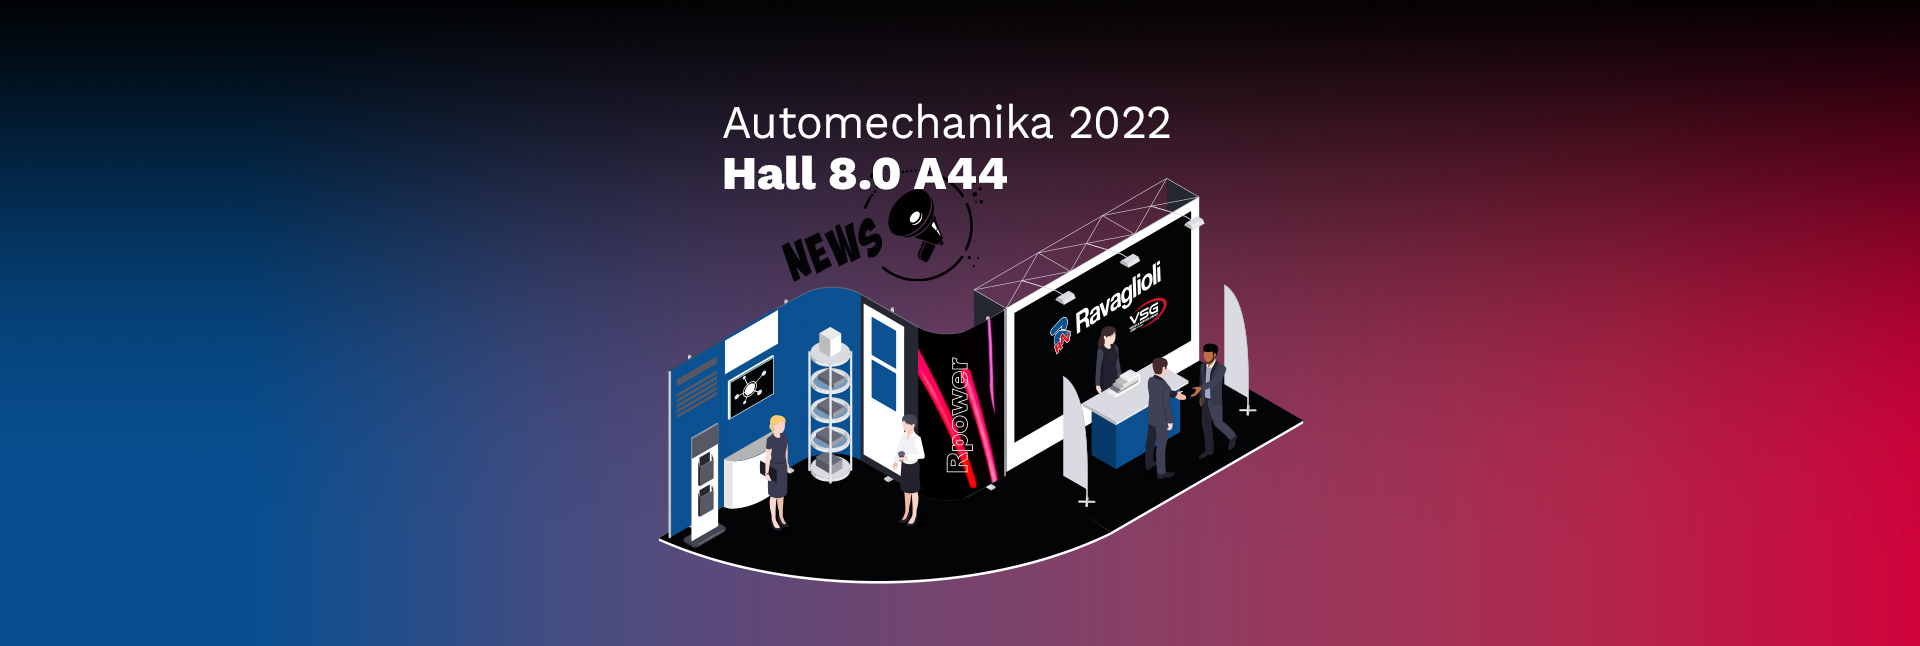 Ferias – Automechanika 2022